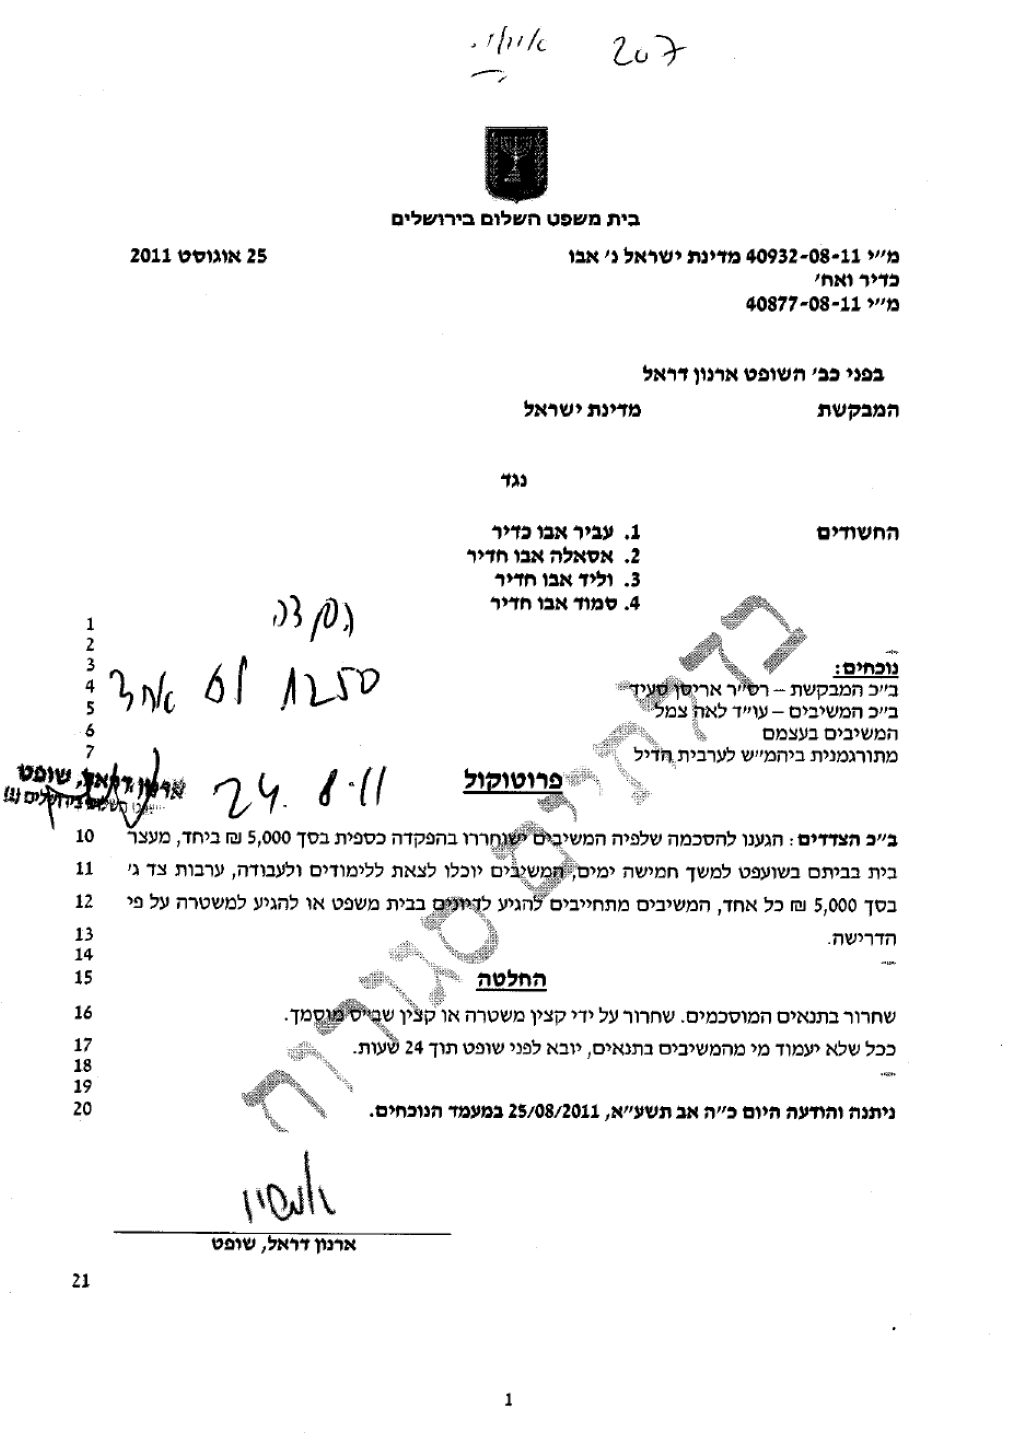 מעצר ימים מדינת ישראל נ אסאלה אבו כדיר אצל השופט ארנון דראל מי 40932-08-11